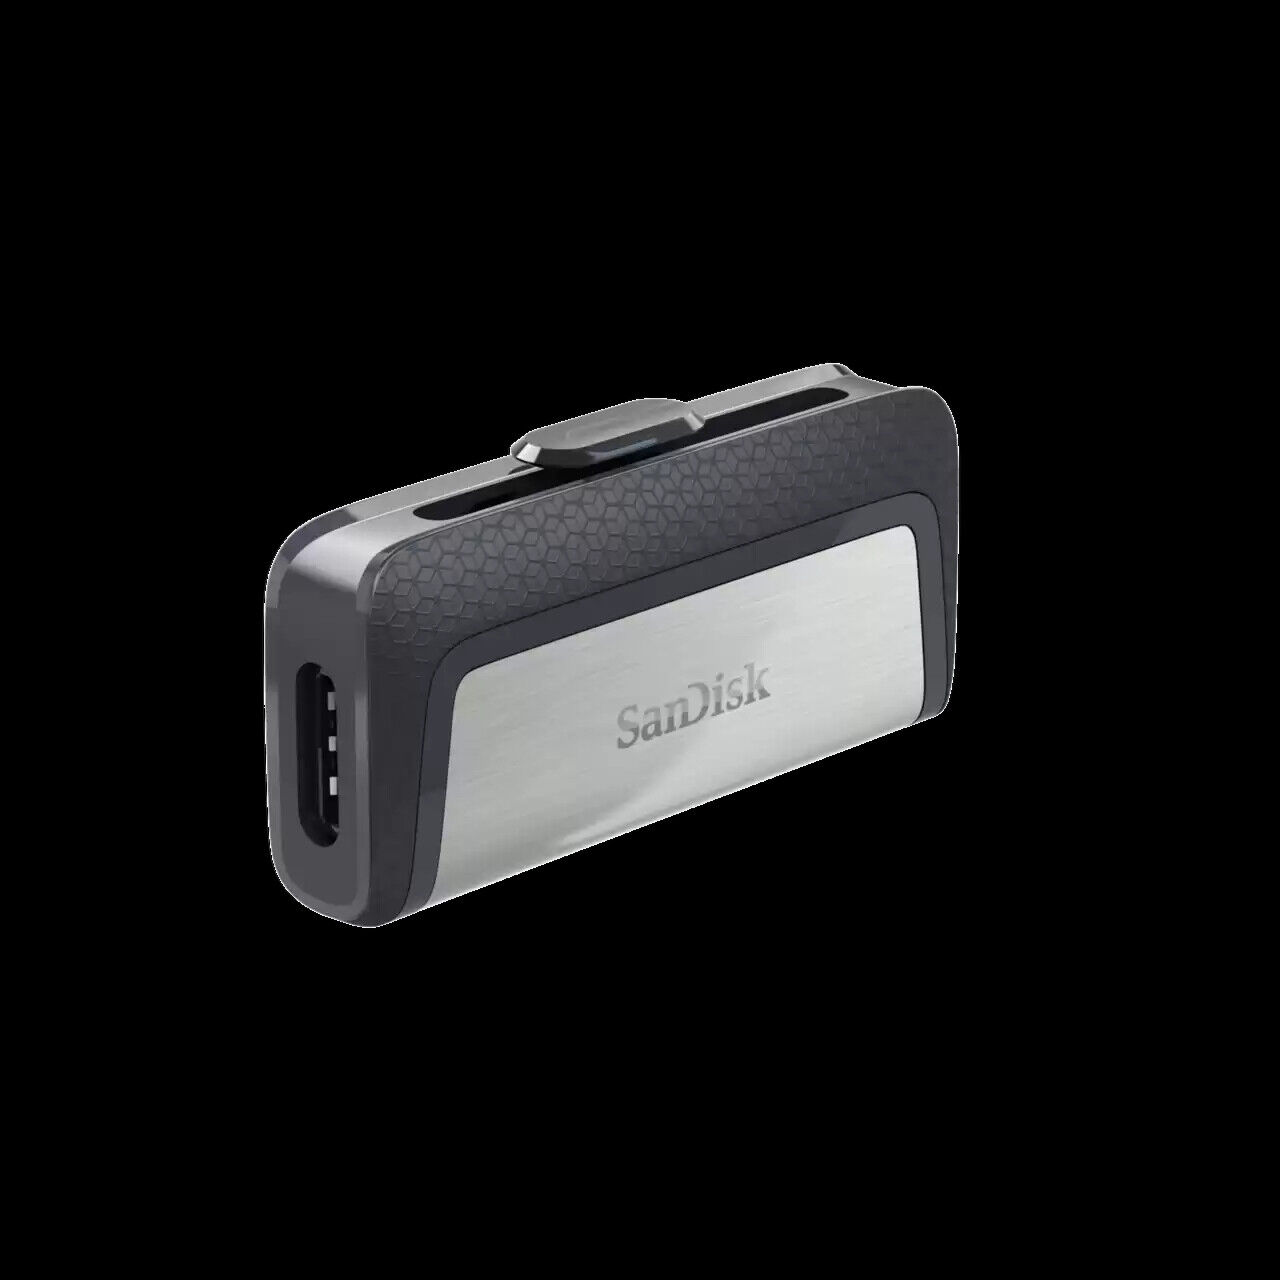 SanDisk 256GB Ultra Dual Drive USB Type-C, USB 3.1 Flash Drive - SDDDC2-256G-G46